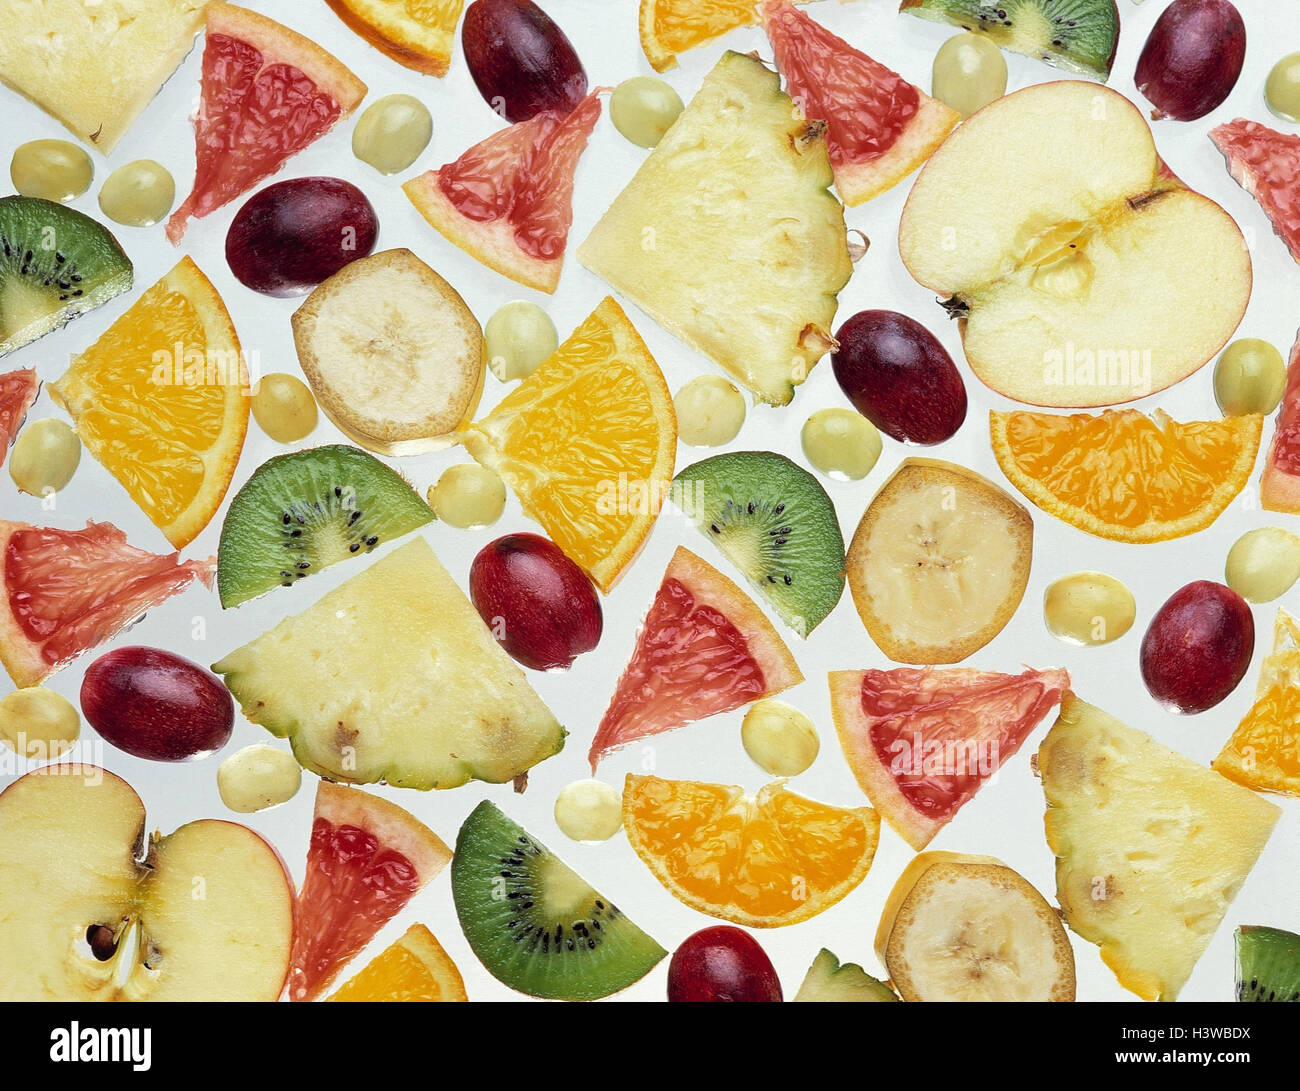 Tipi di frutta, tagliate la frutta, frutta, ordina, arancio, banana, mela, ananas, Arancio sanguigno, kiwi, uva, insalata di frutta, la nutrizione sana, materie cibo vegetariano, ricco di vitamine, vitamina C, vitamine, carne, studio, tagliate, Foto Stock